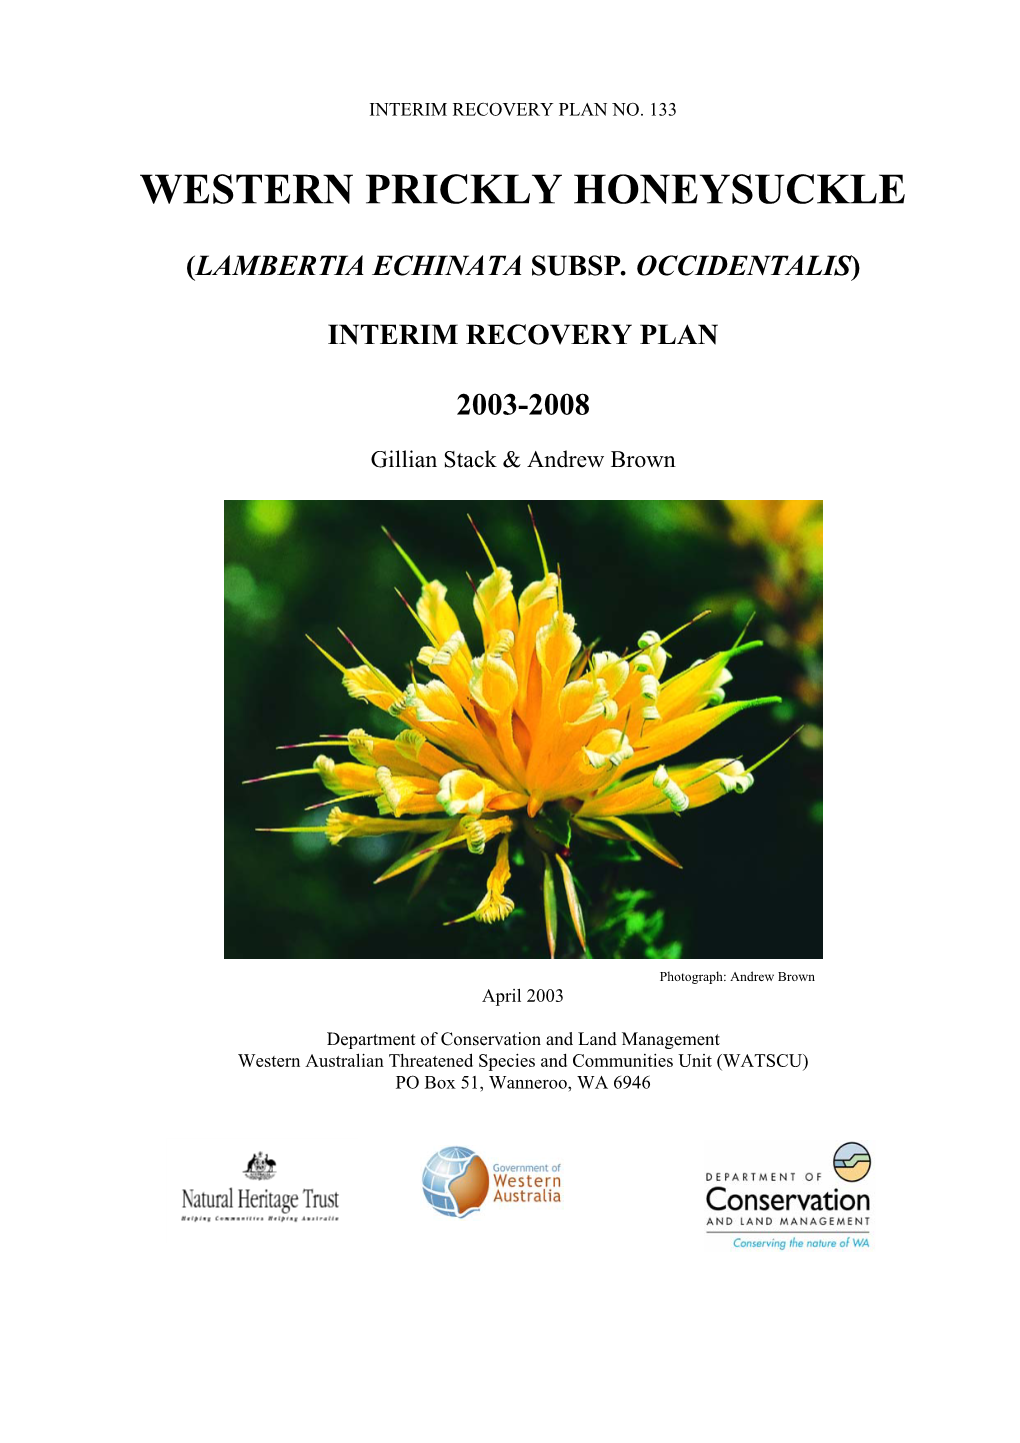 Lambertia Echinata Subsp. Occidentalis)